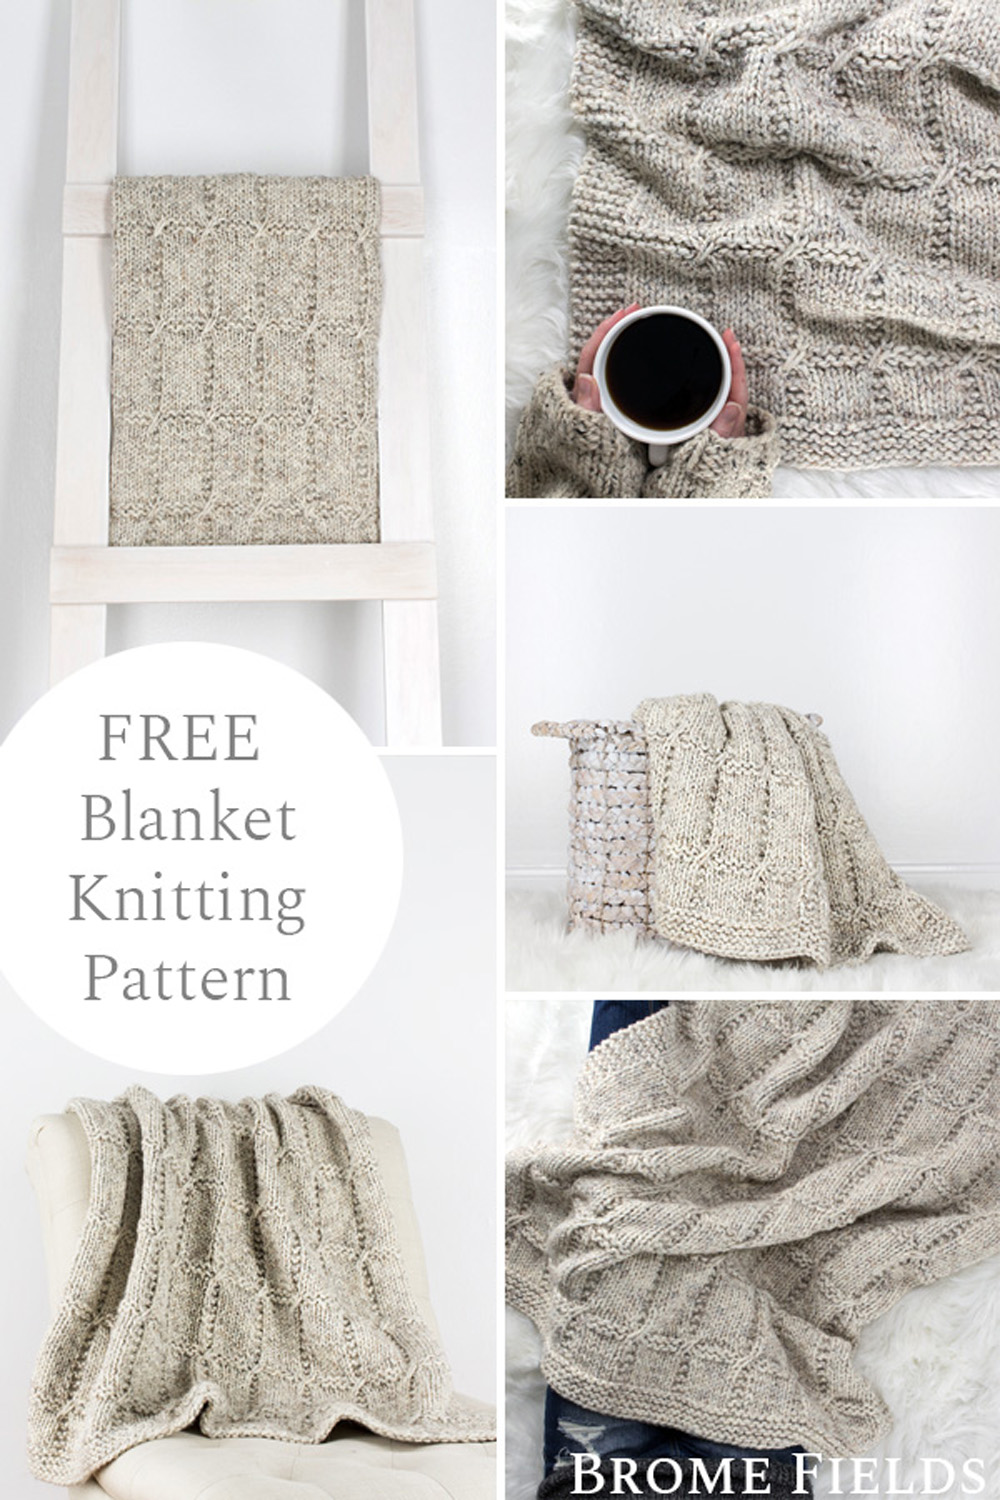 Beautiful Knit Blanket Pattern Free : Free Knitting Pattern